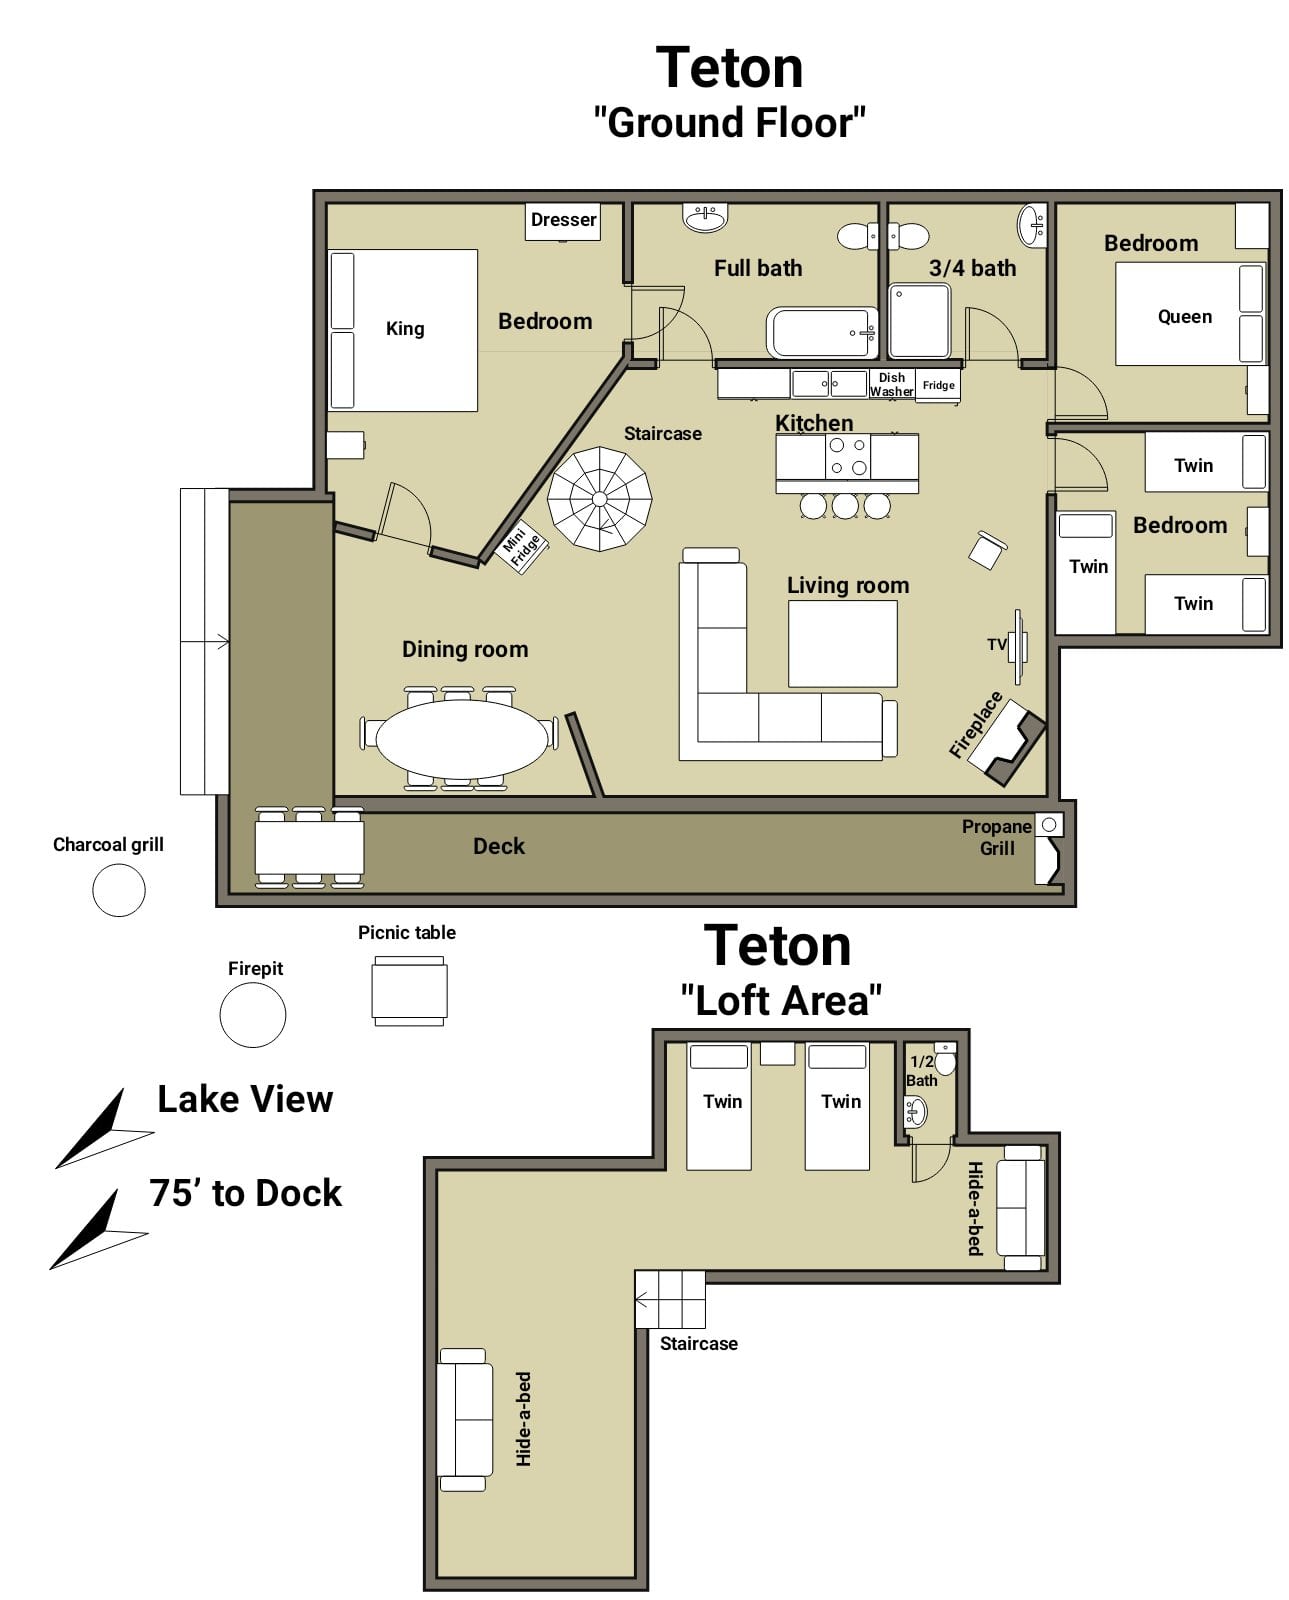 Teton cabin floorplan.